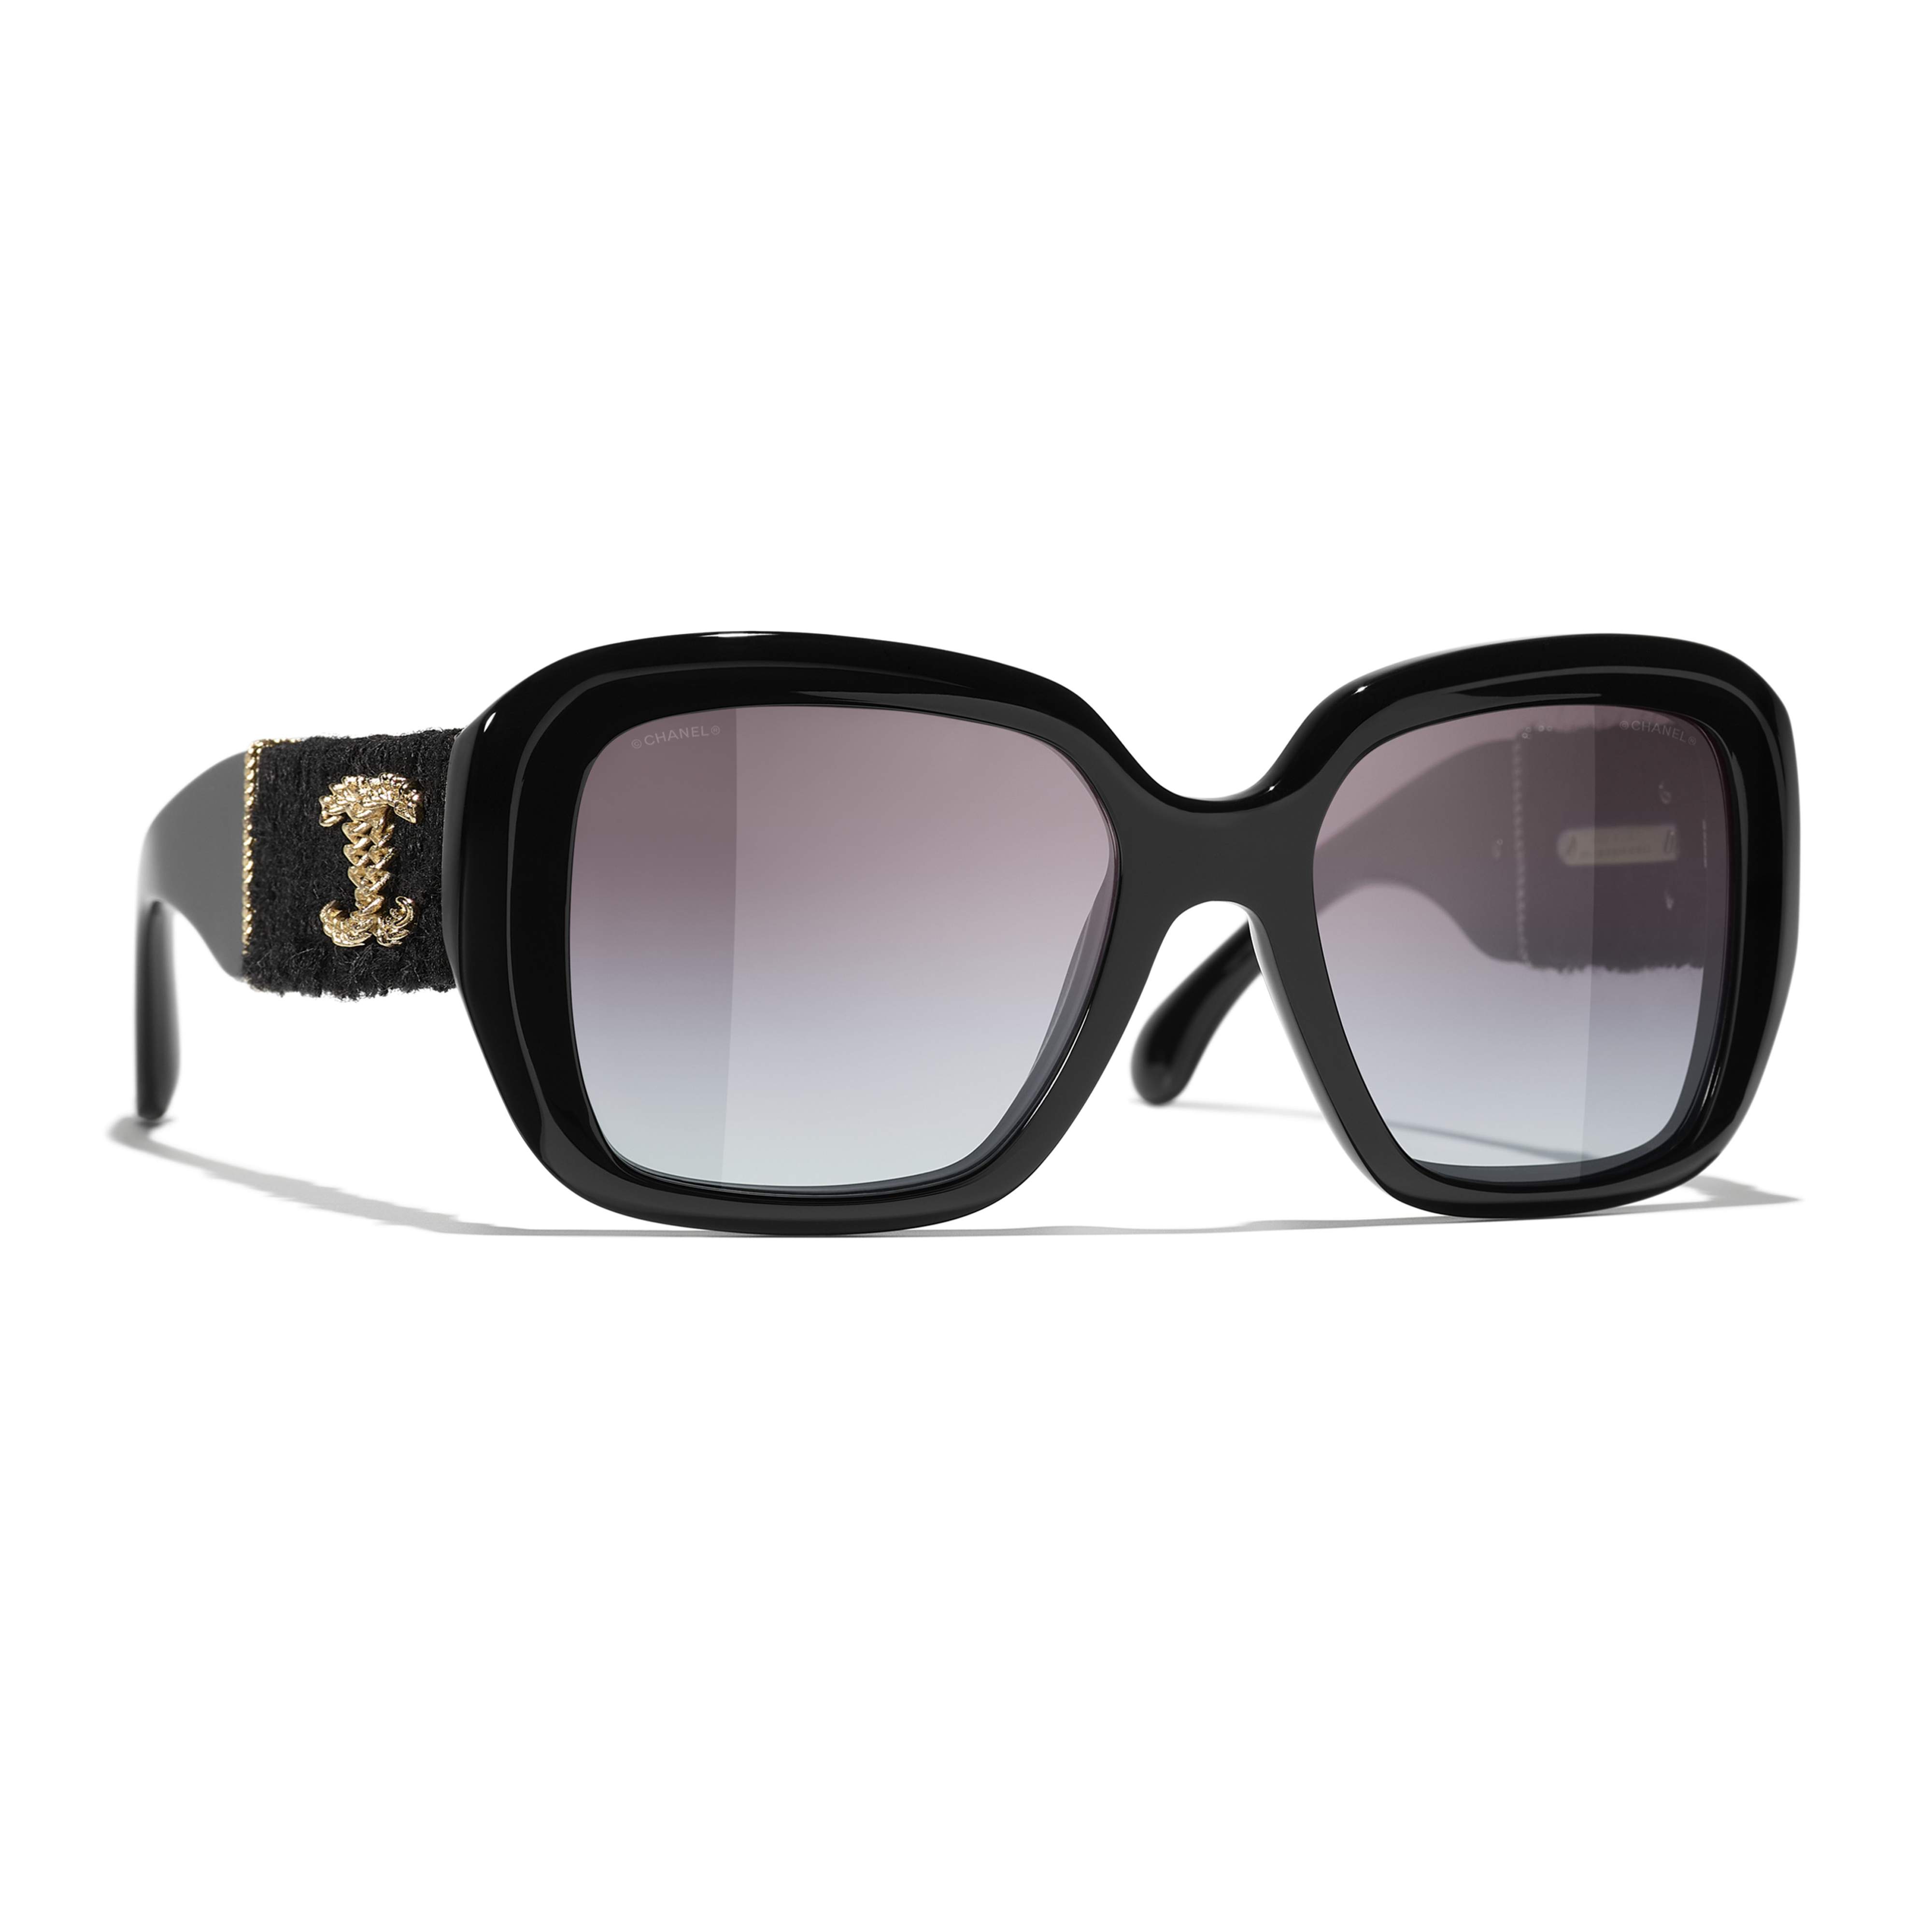 Sunglasses CHANEL CH5512 C622/S6 55-19 Black in stock, Price 516,67 €